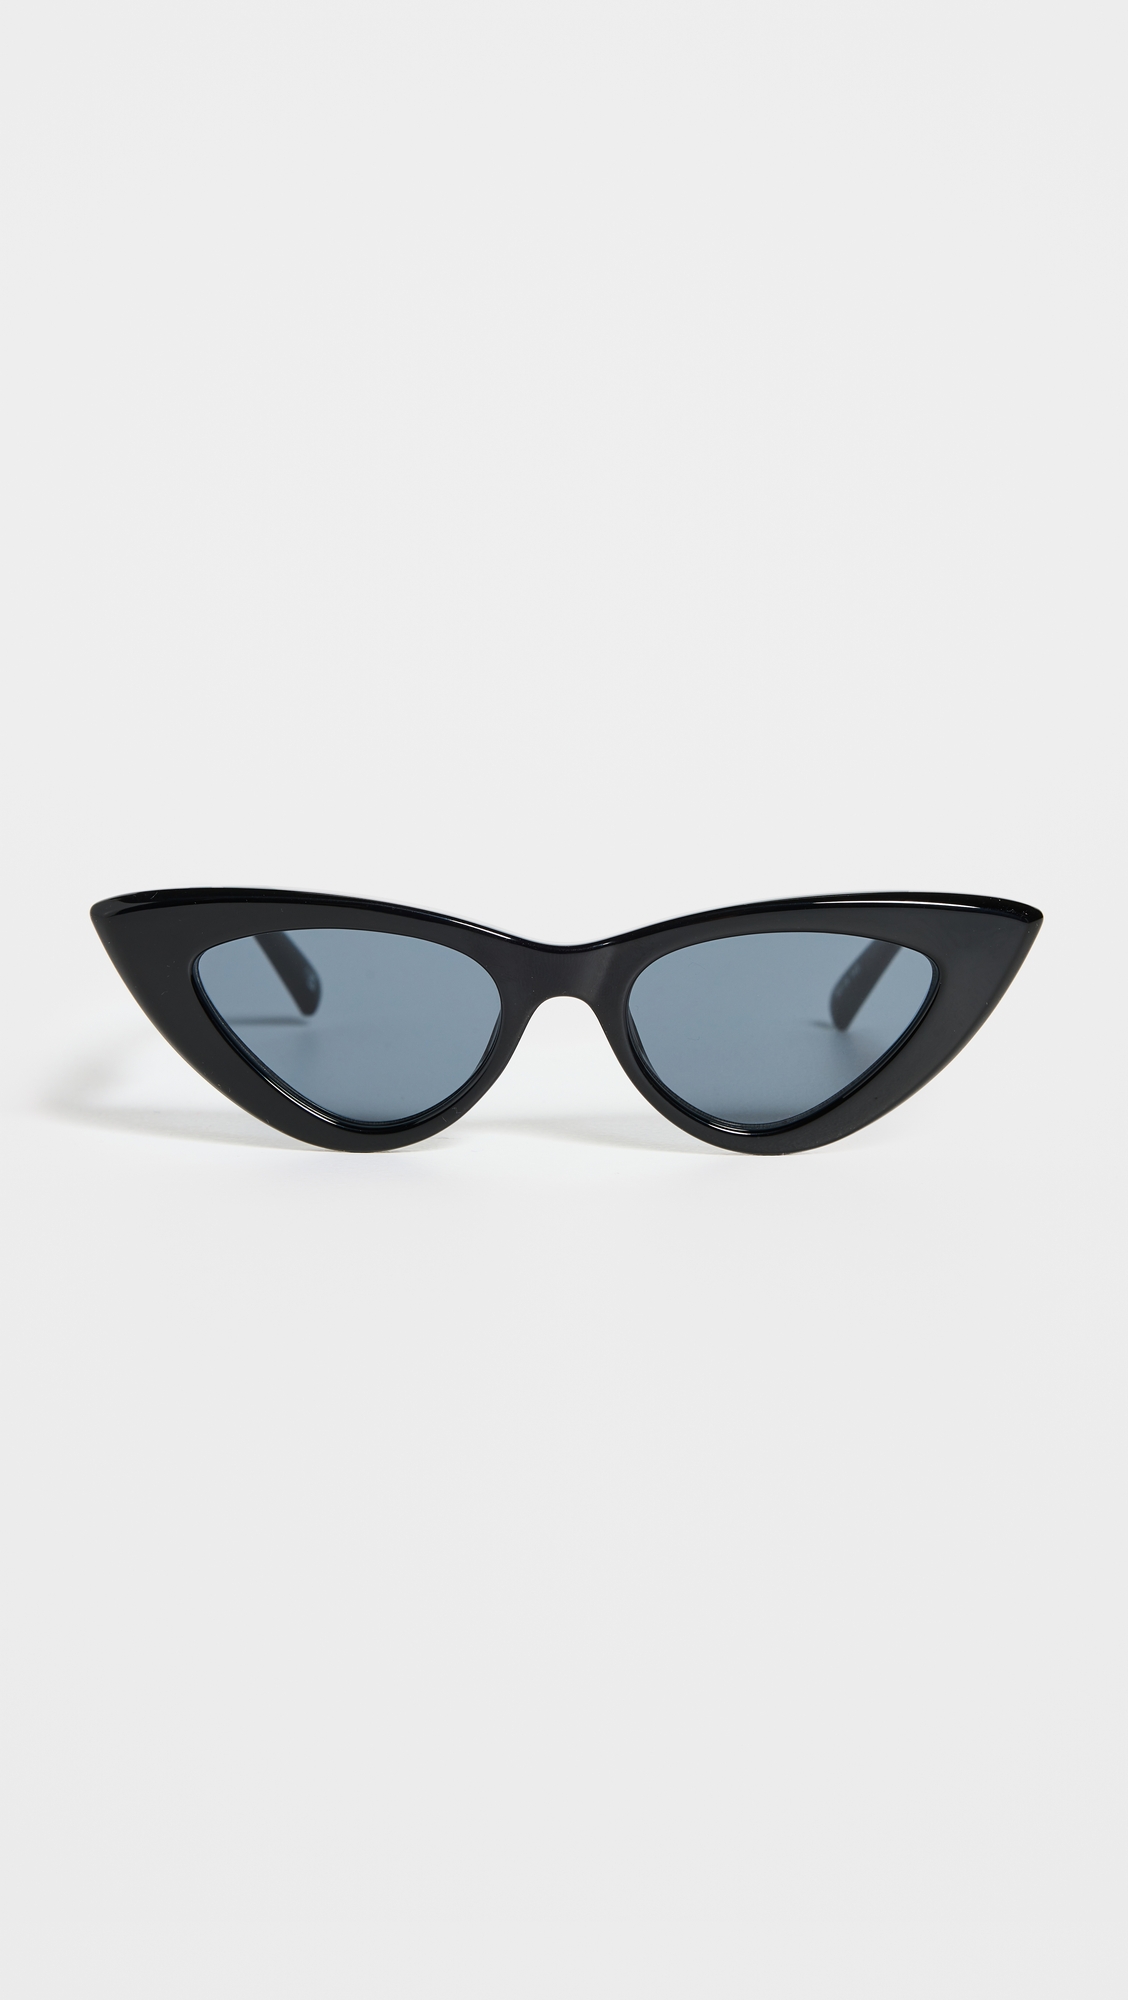 black cat-eye sunglasses with blue lenses